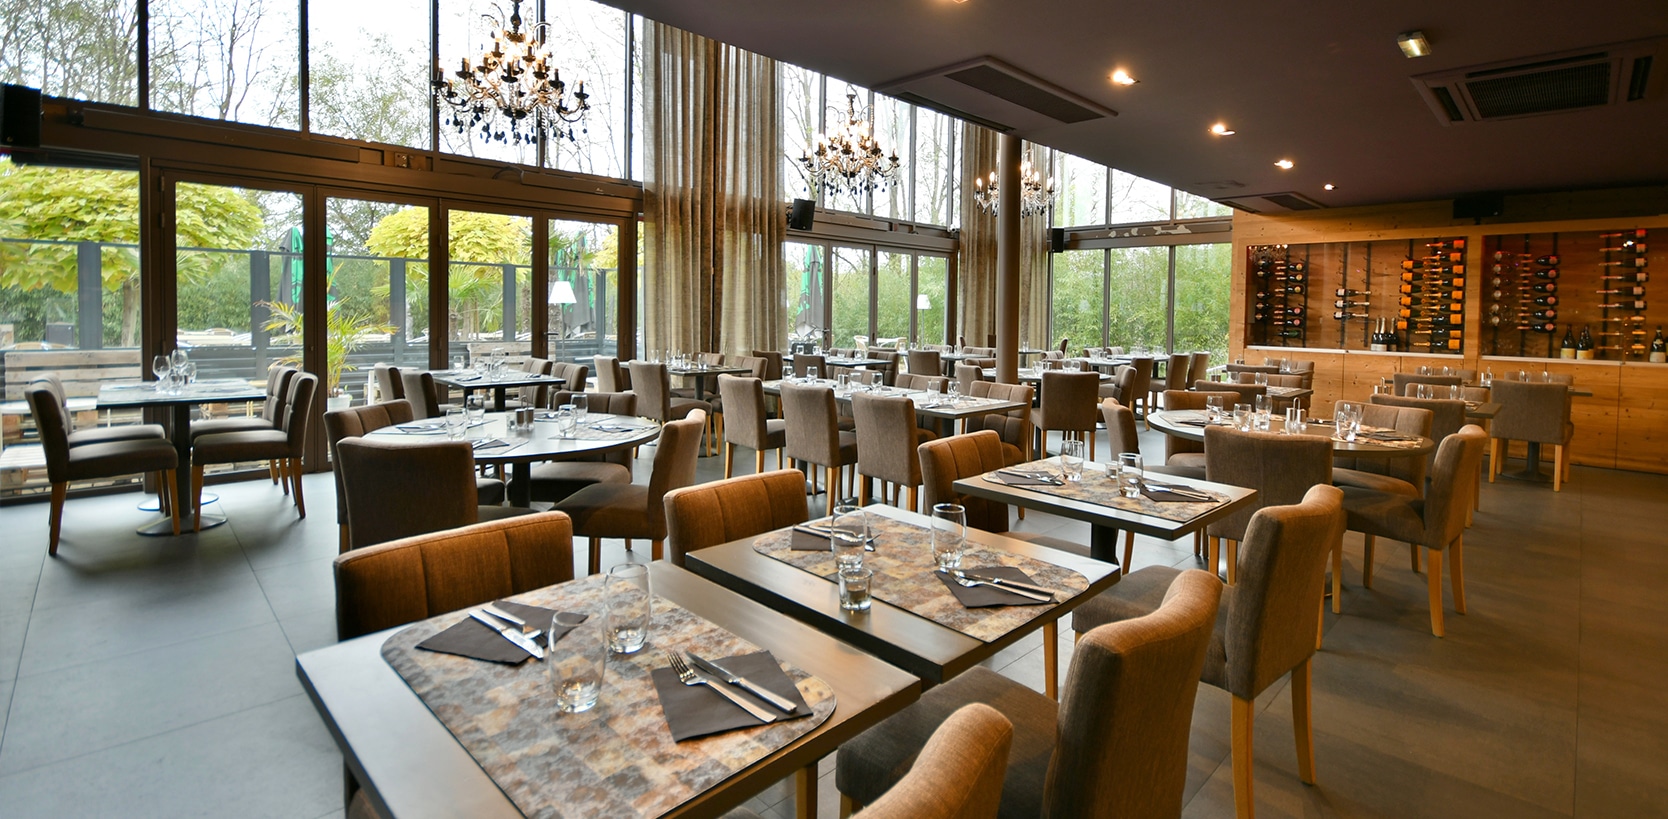 L'Unik Brasserie - restaurant Haguenau : Le midi pour vos repas d'affaires, de famille ou entre amis